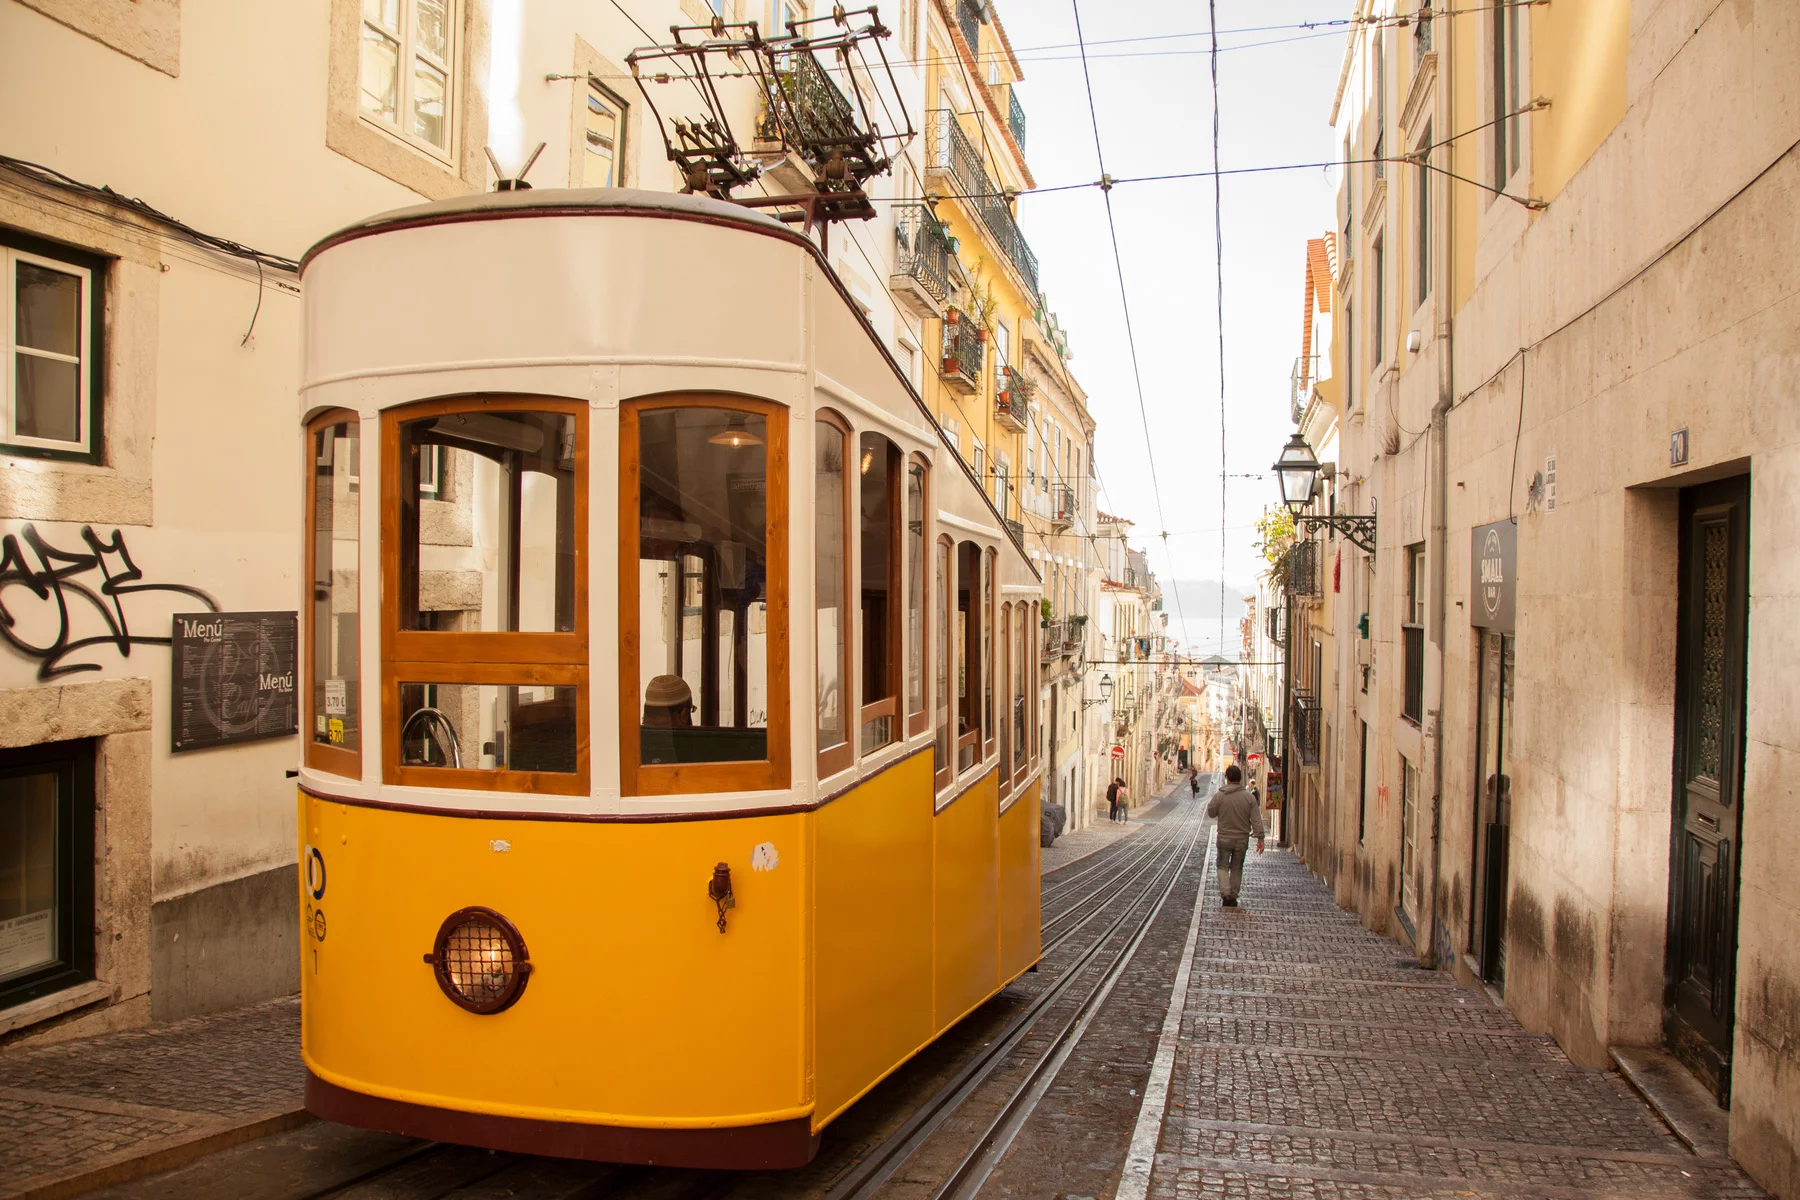 Lisbon's famous vintage tram 